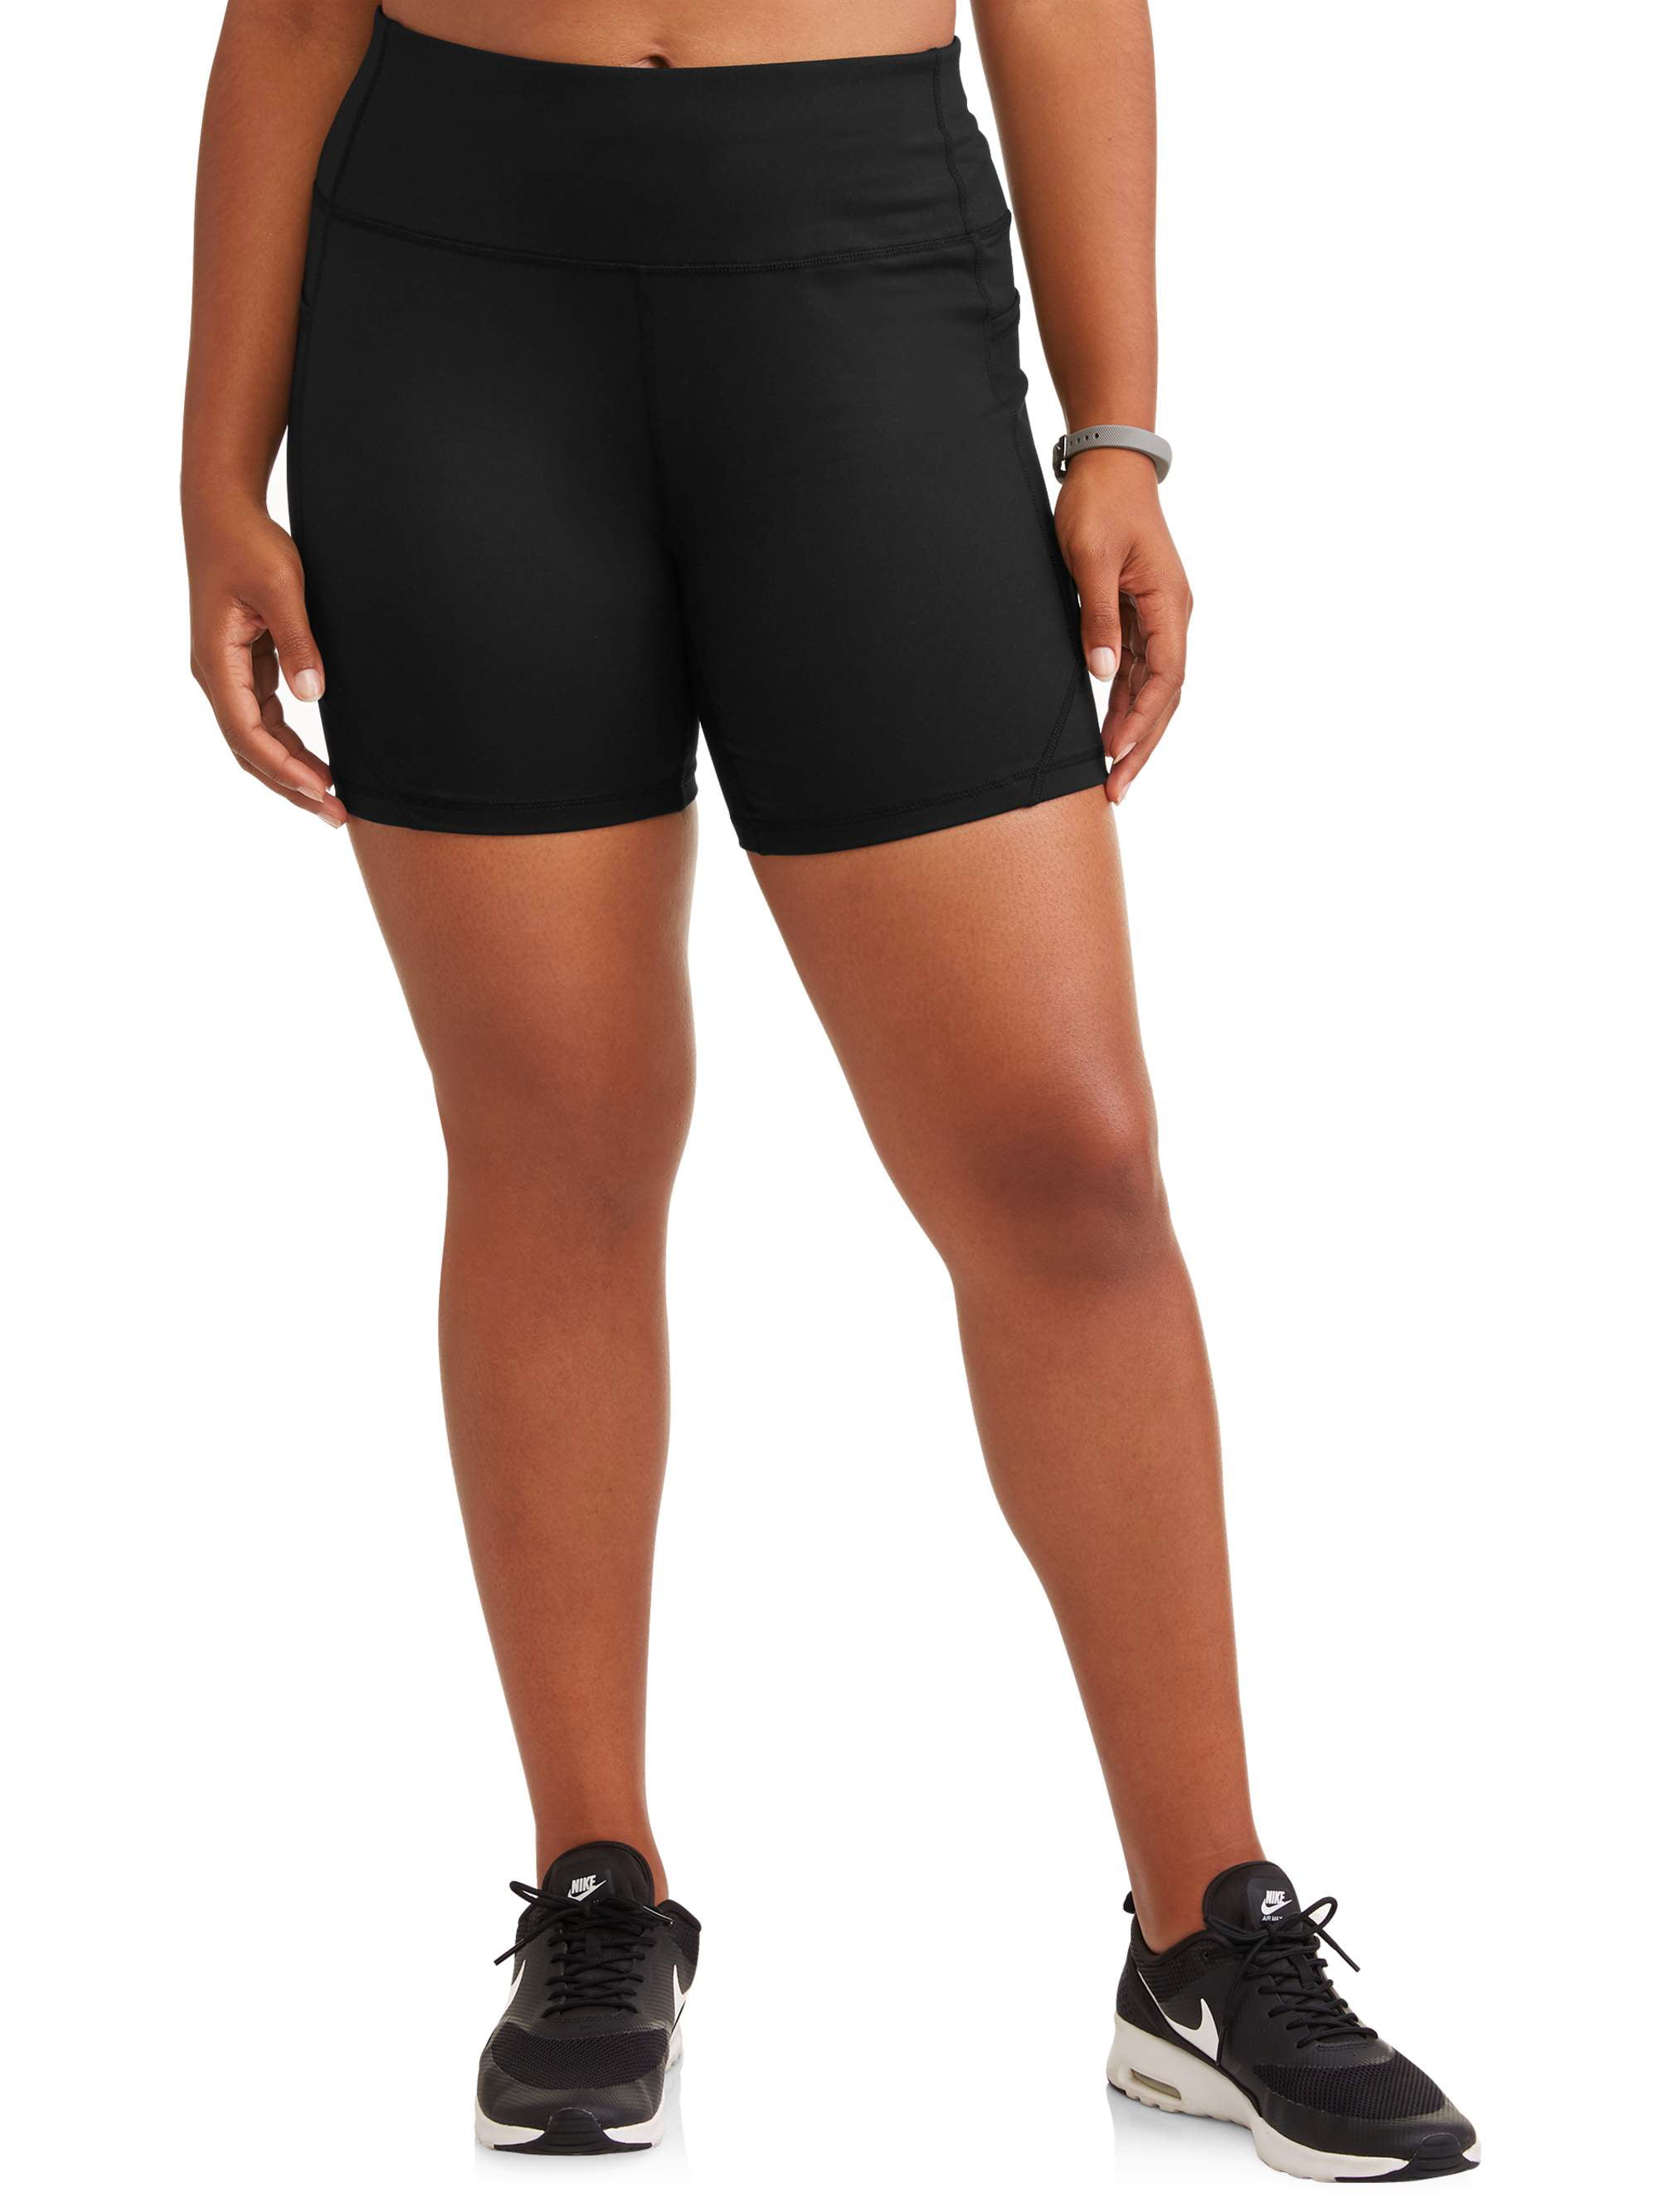 BALEAF Women's 7 Long Running Shorts No Liner Zipper Pockets